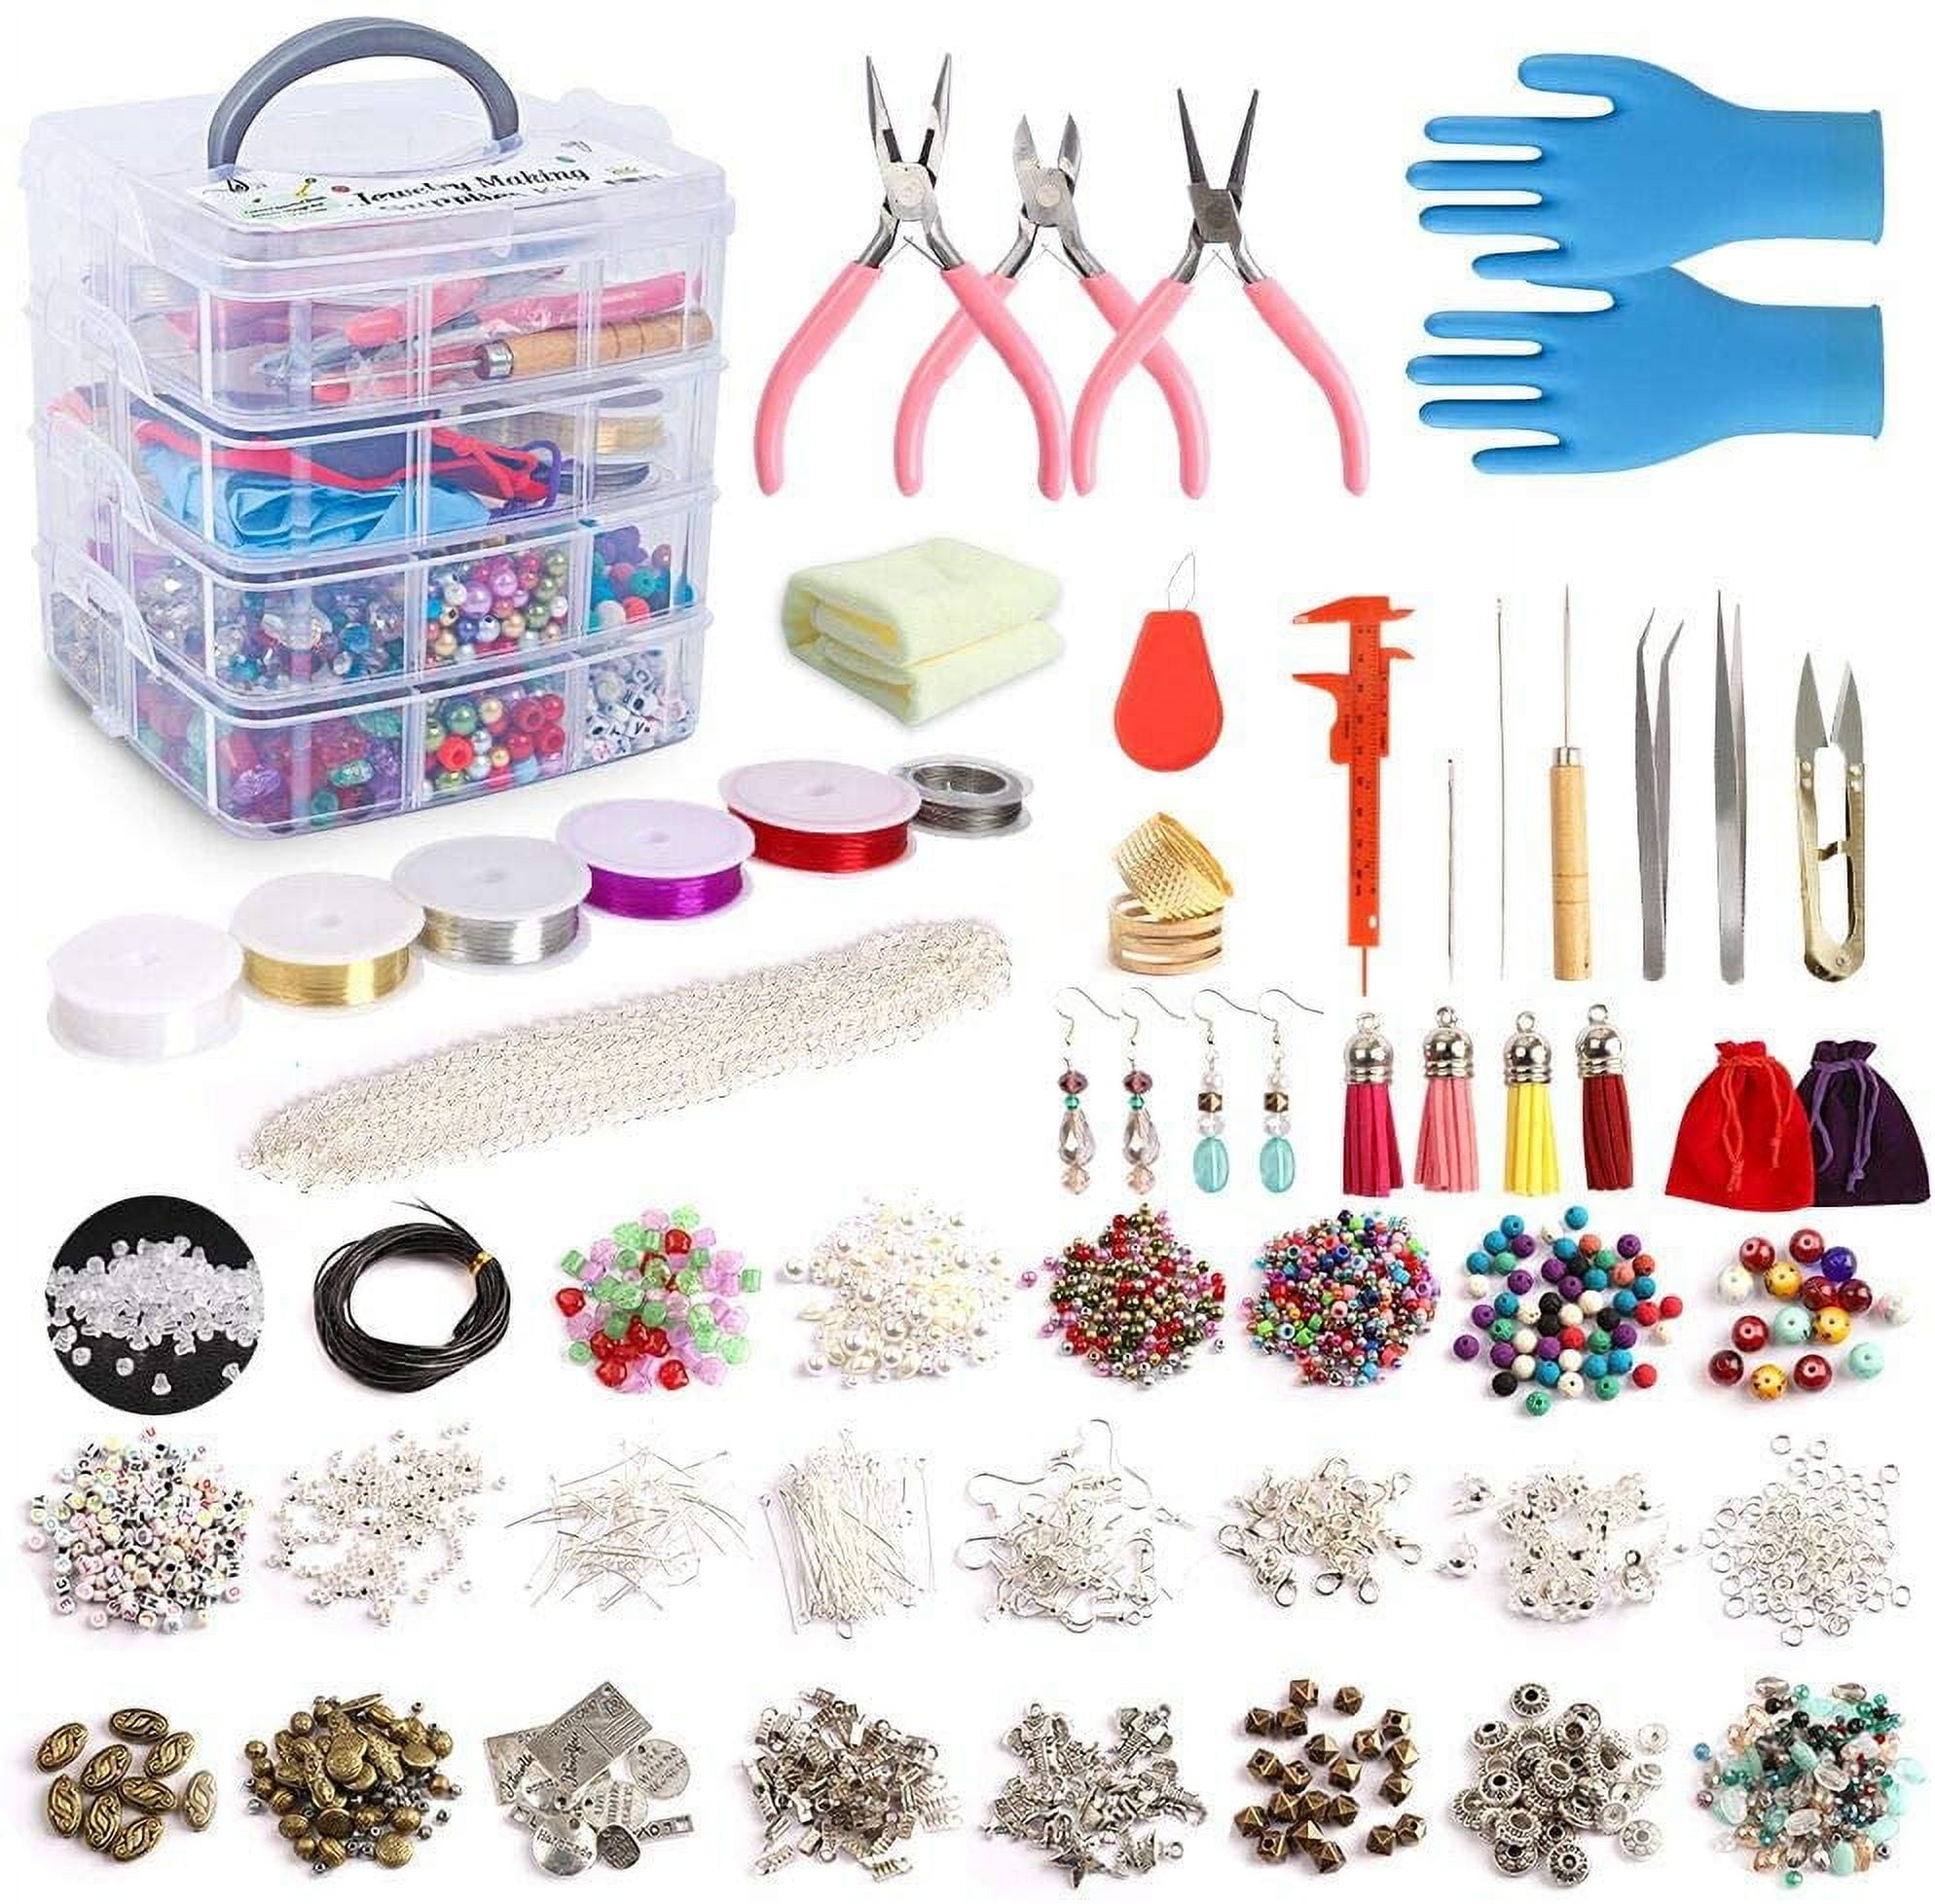 Jewelry supplies - Jewelry